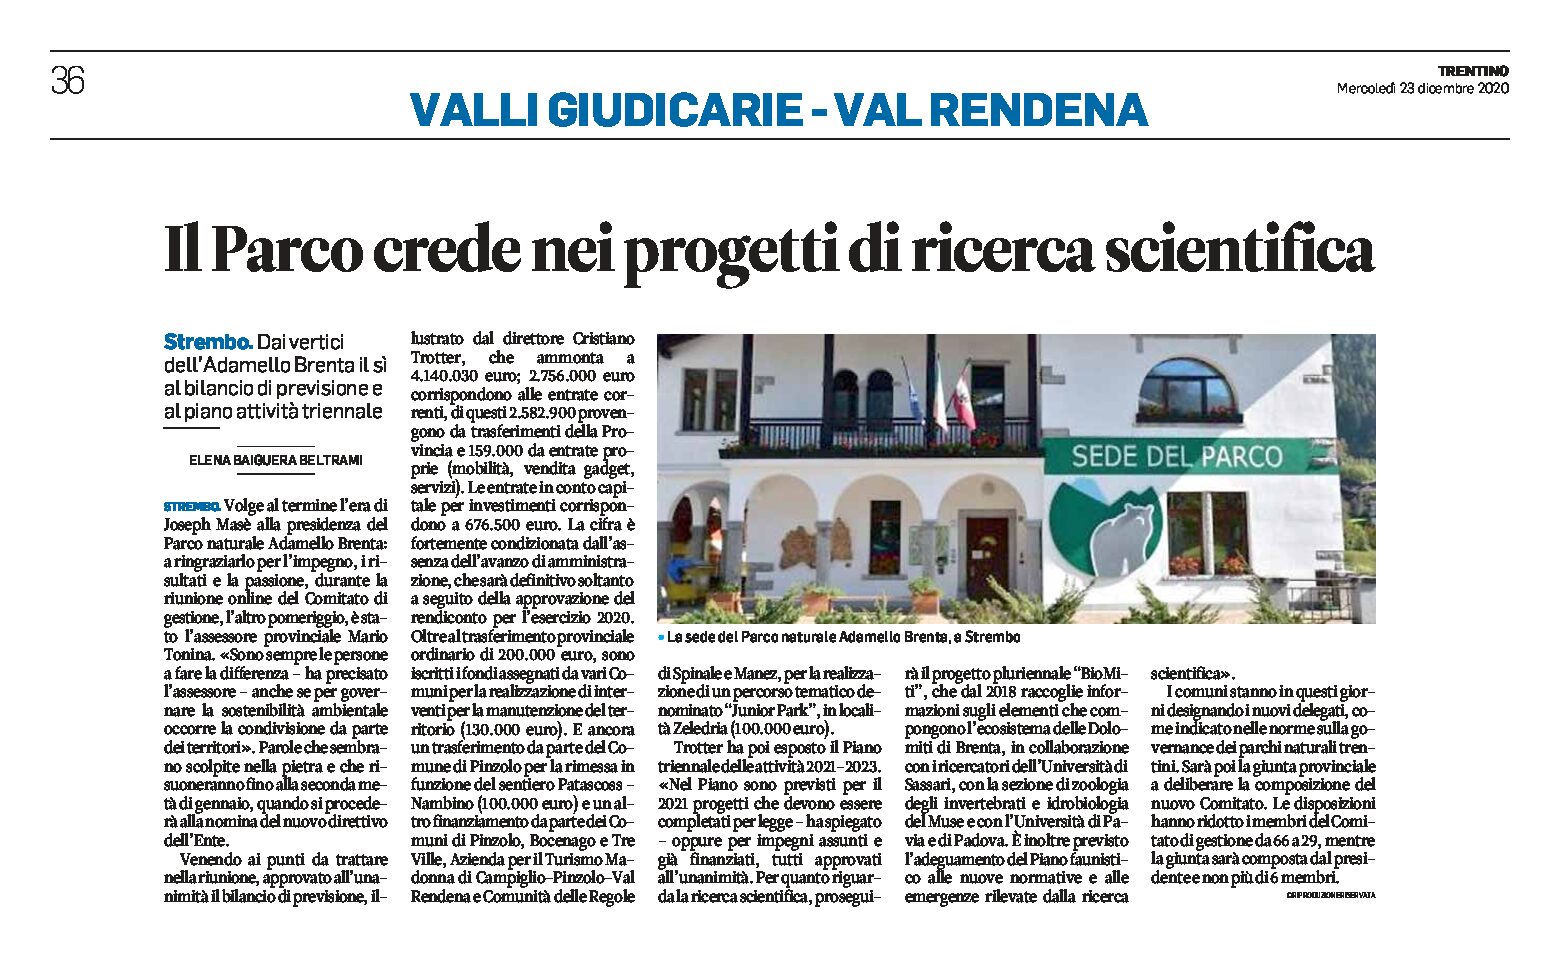 Adamello Brenta: il Parco crede nei progetti di ricerca scientifica